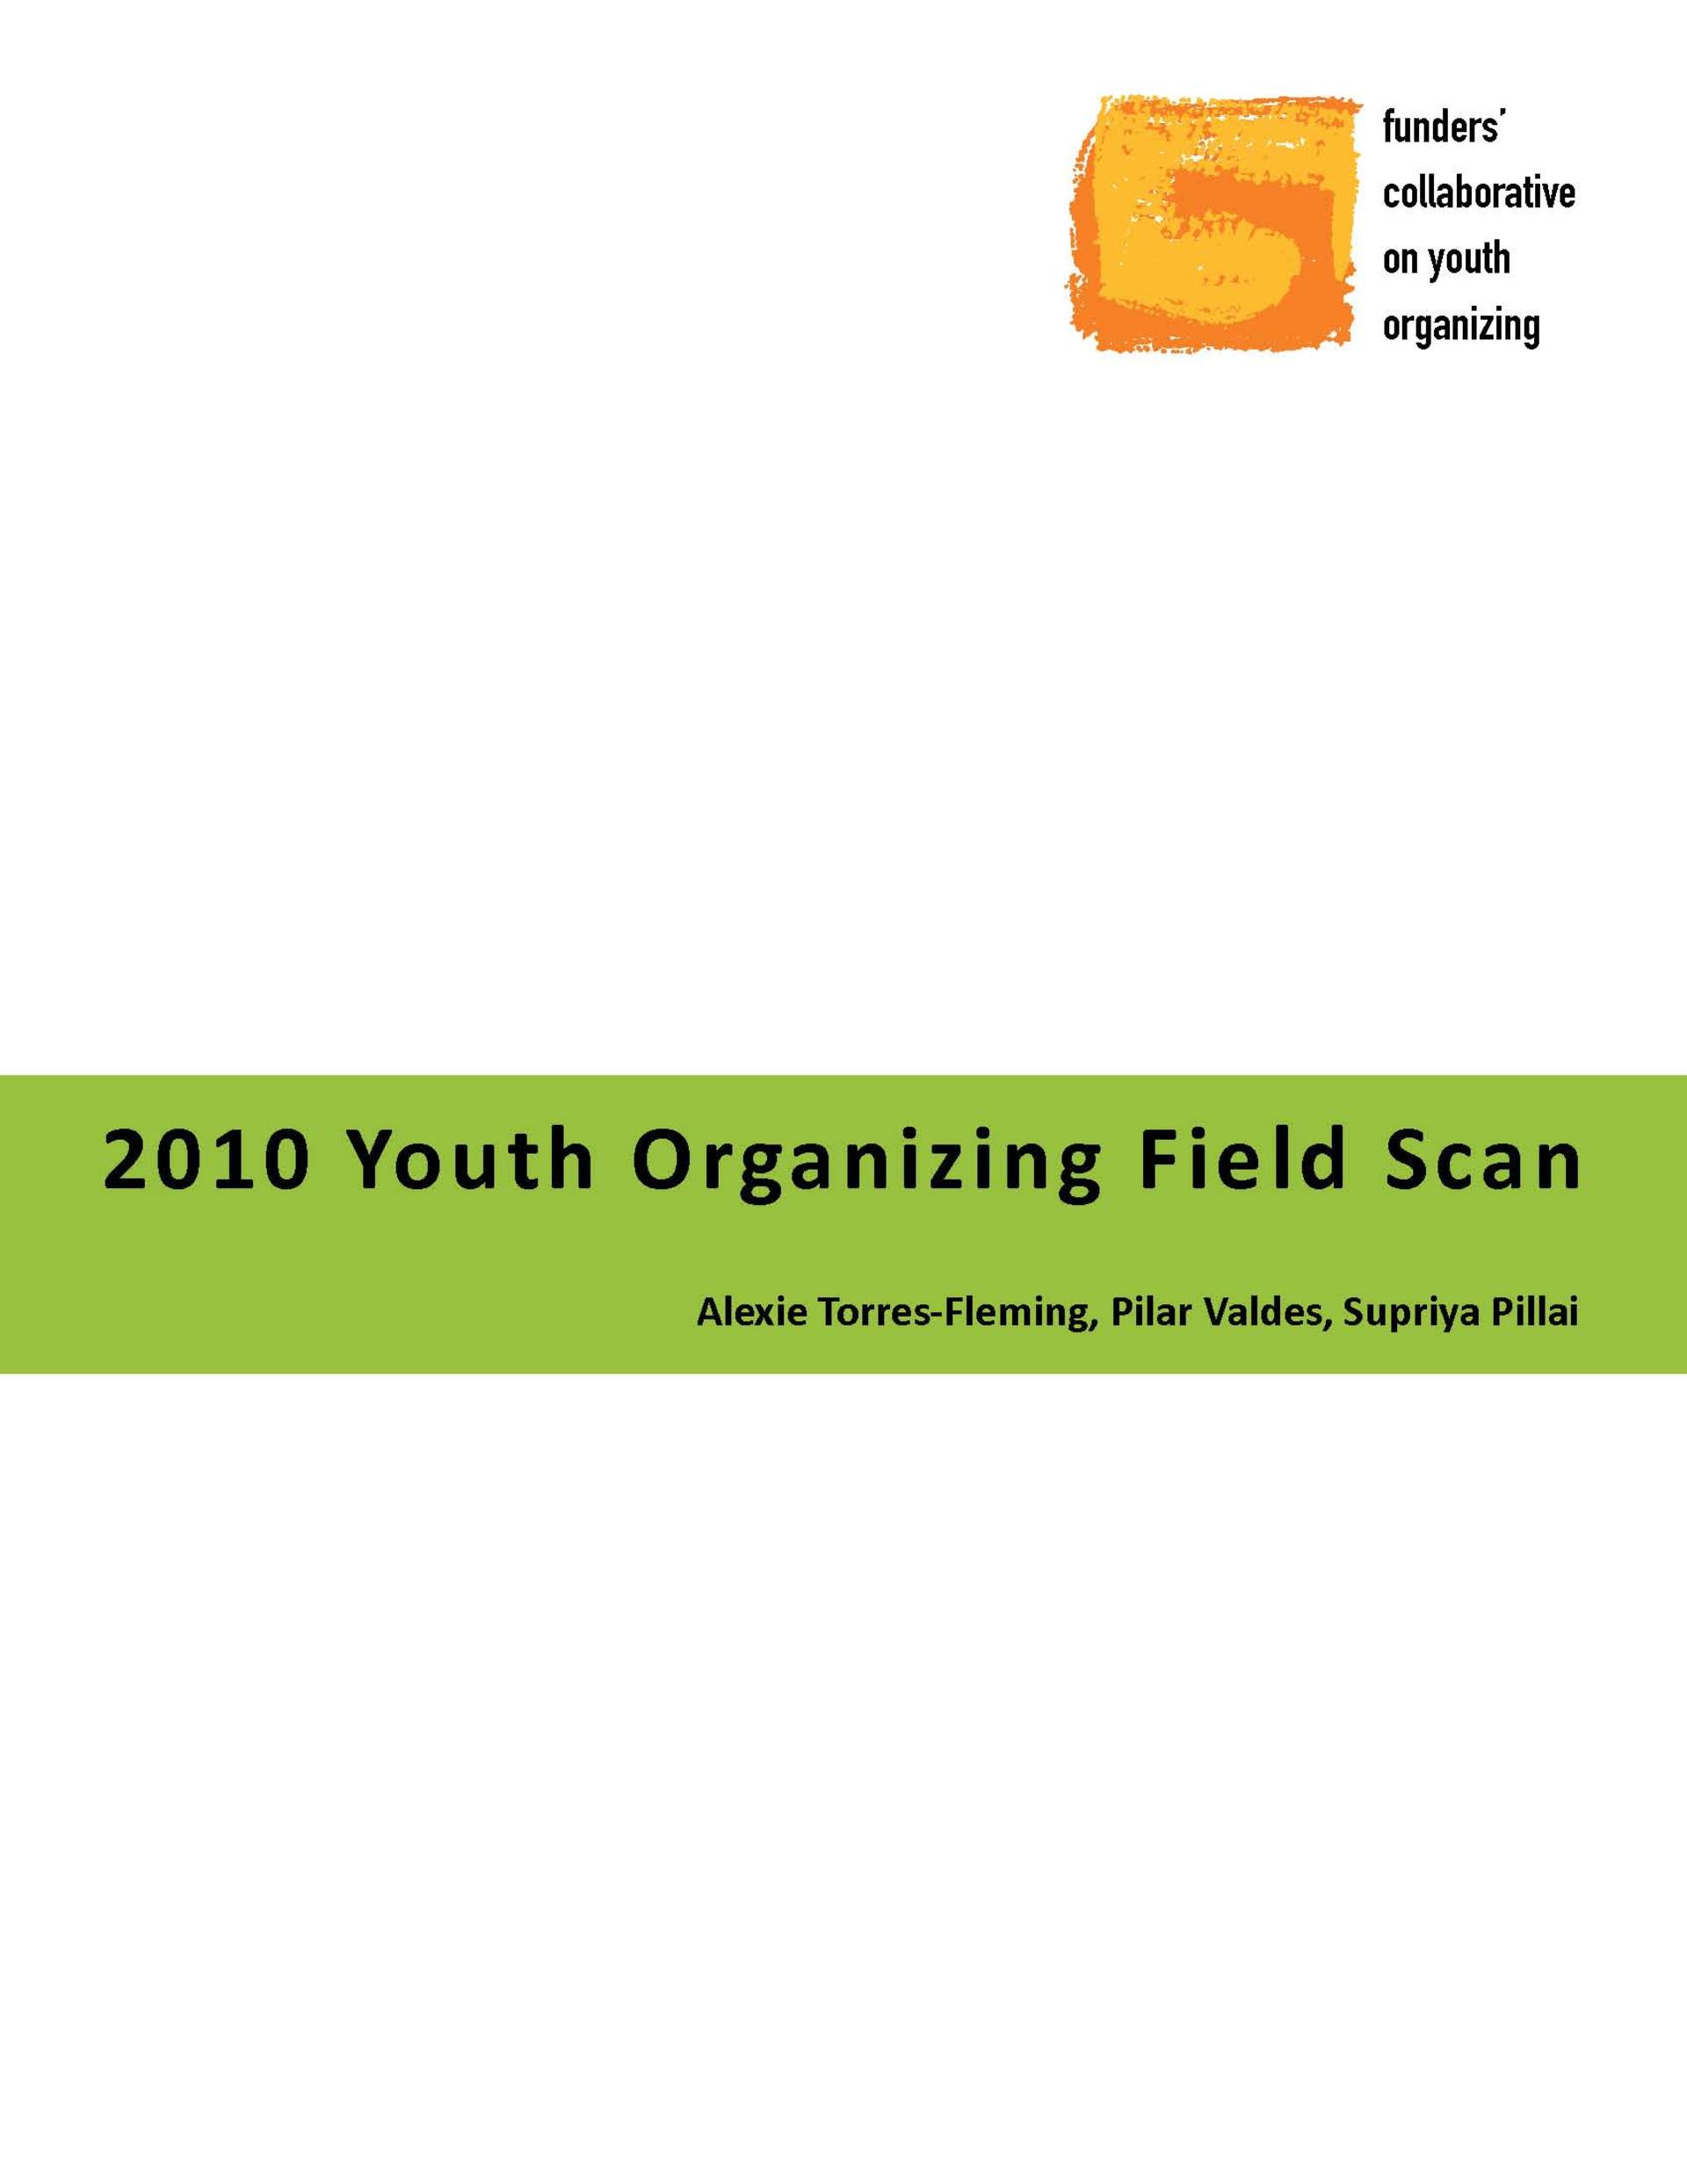 2019 Field Scan